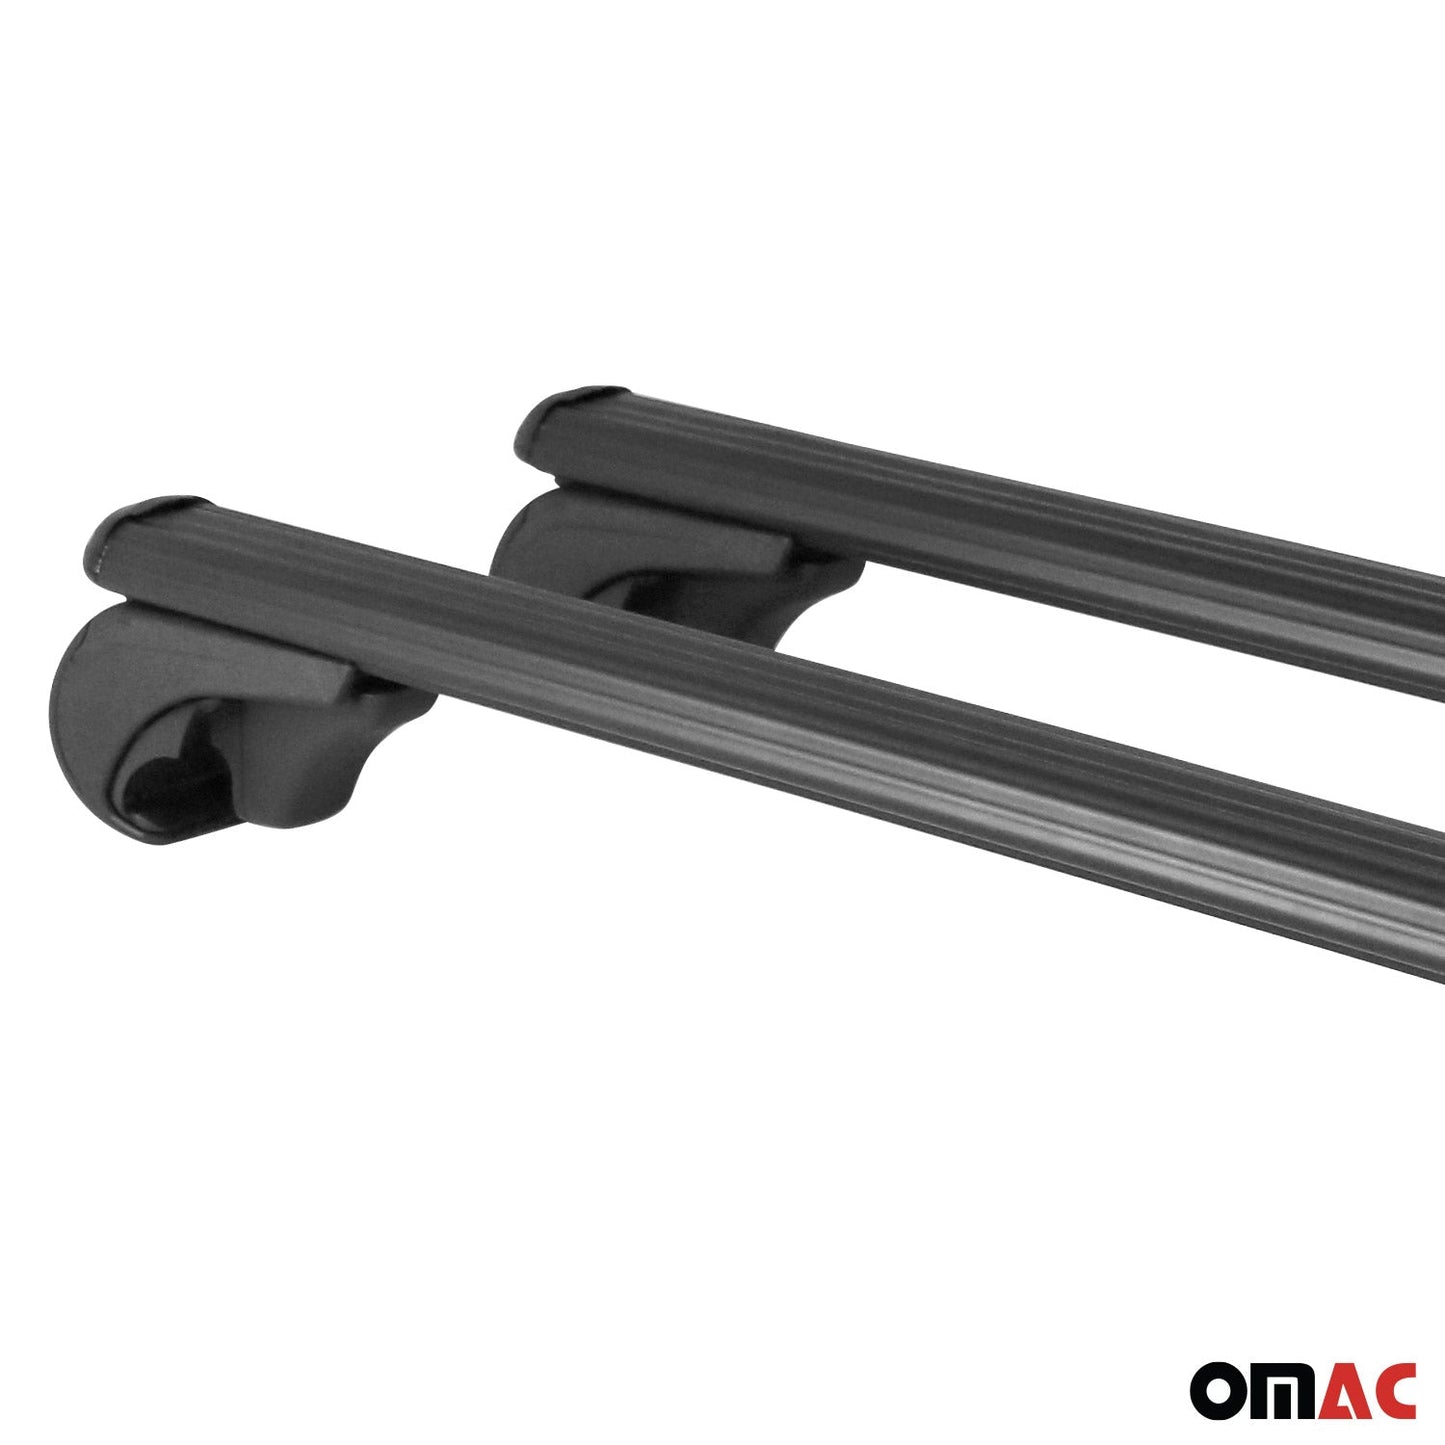 OMAC Lockable Roof Rack Cross Bars Carrier for Chevrolet Captiva Sport 2012-15 Black 16029696929MB